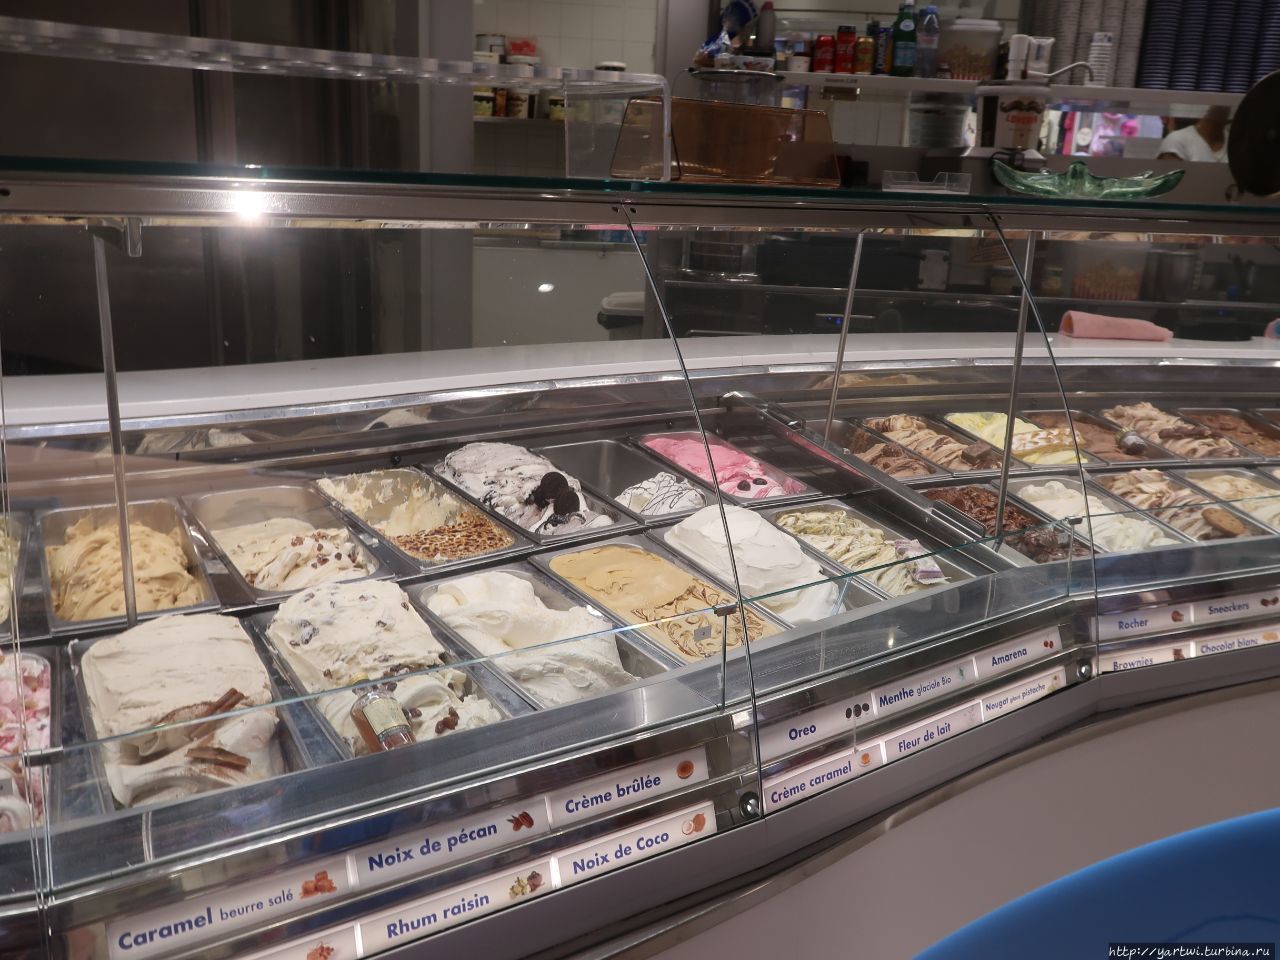 Не только возле рынка Ниццы, но и везде на Лазурном Берегу таким образом продают мороженое. Ницца, Франция